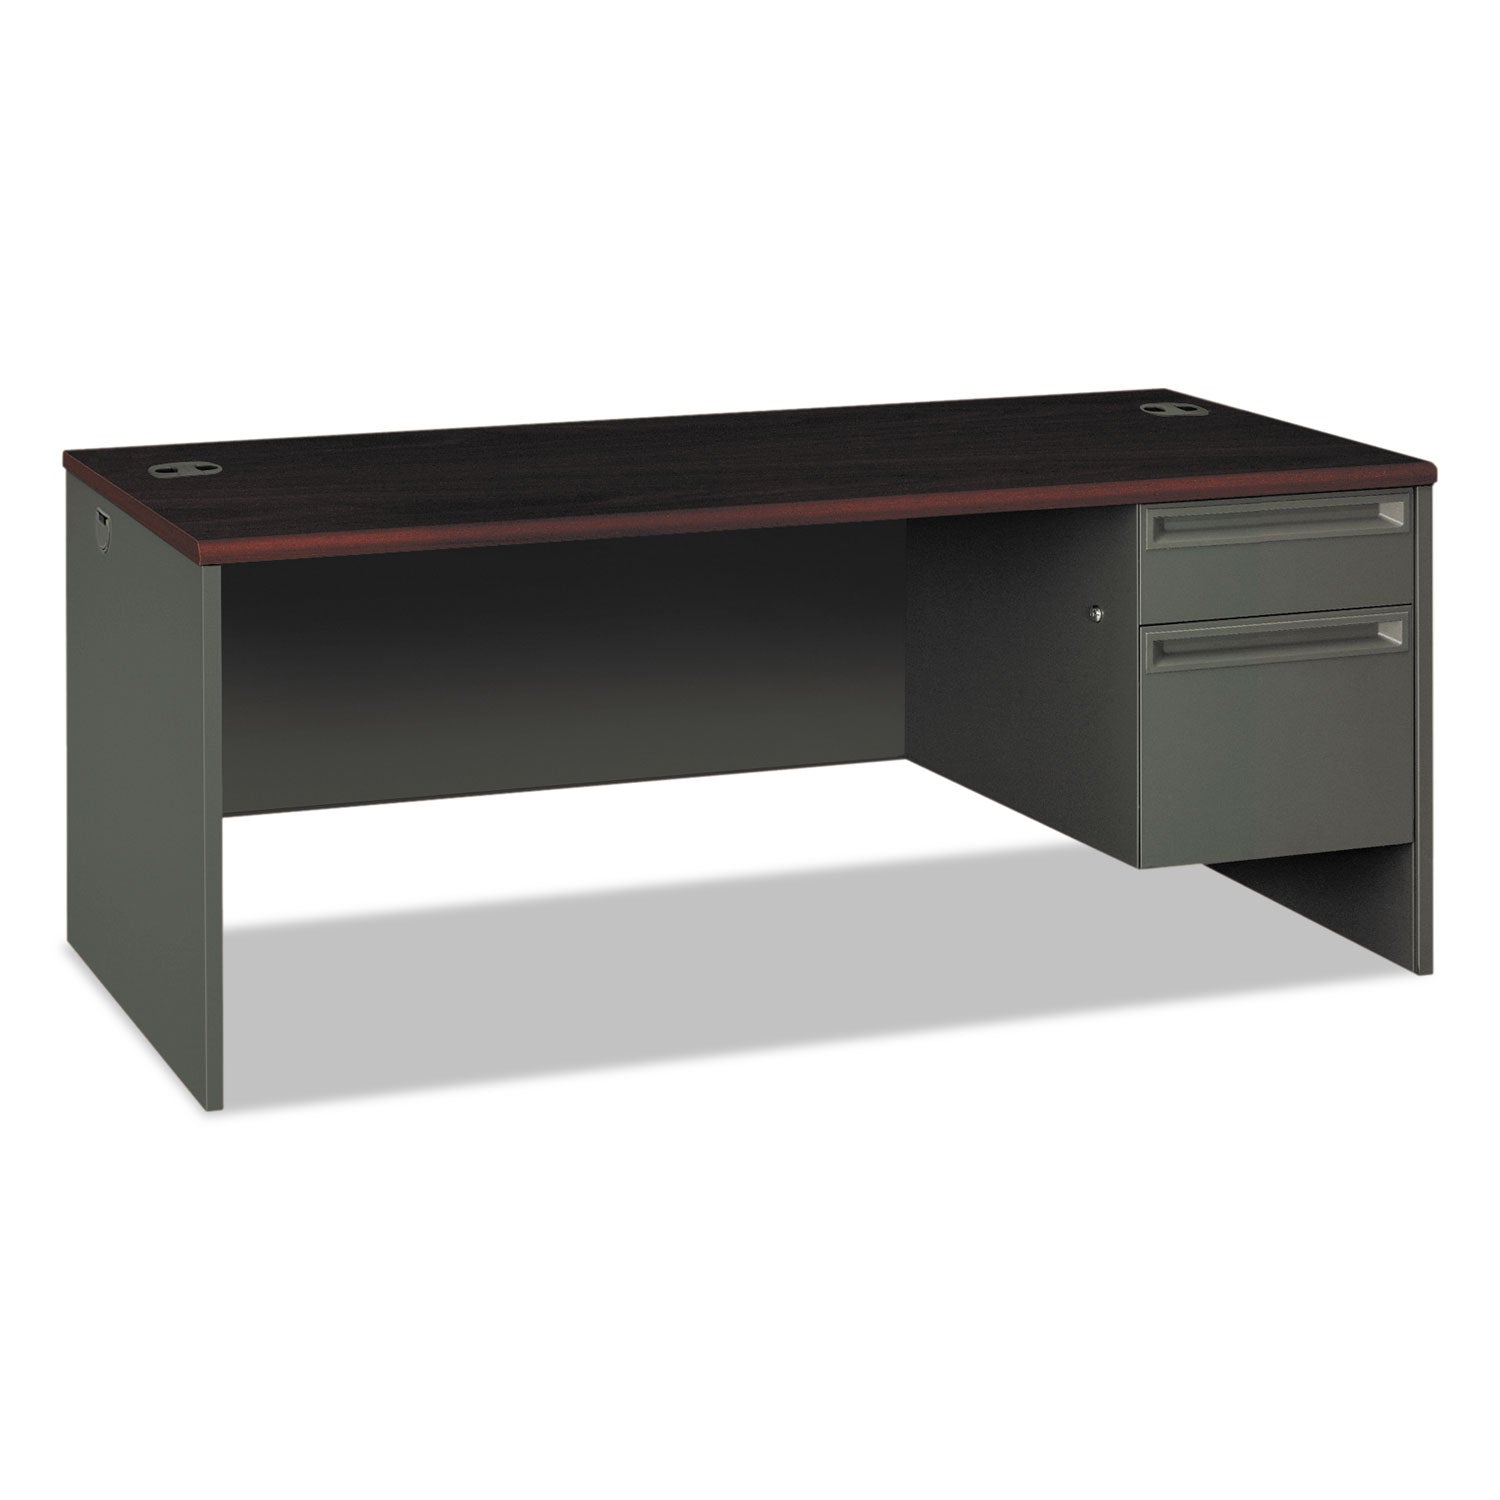 38000 Series Right Pedestal Desk, 72" x 36" x 29.5", Mahogany/Charcoal - 